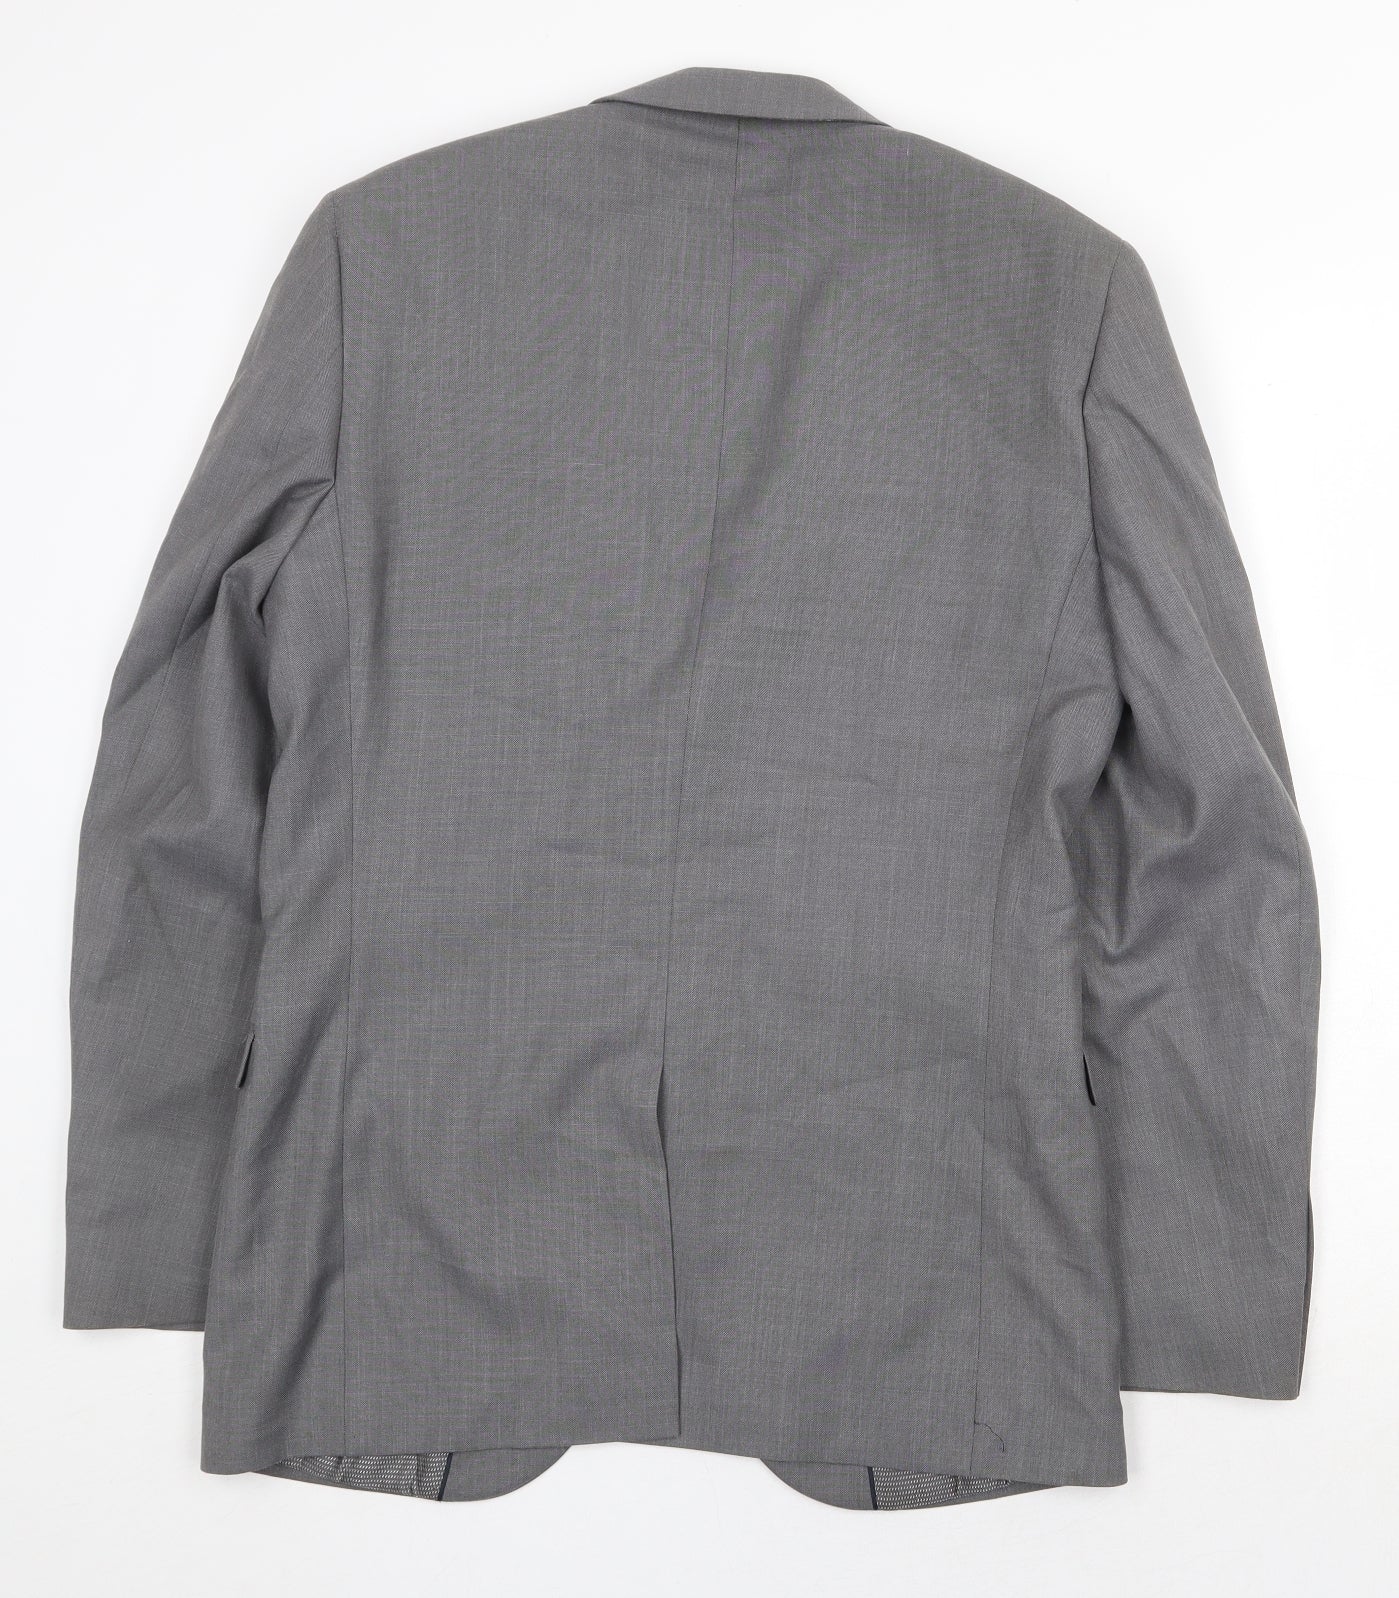 George Mens Grey Polyester Jacket Suit Jacket Size 36 Regular